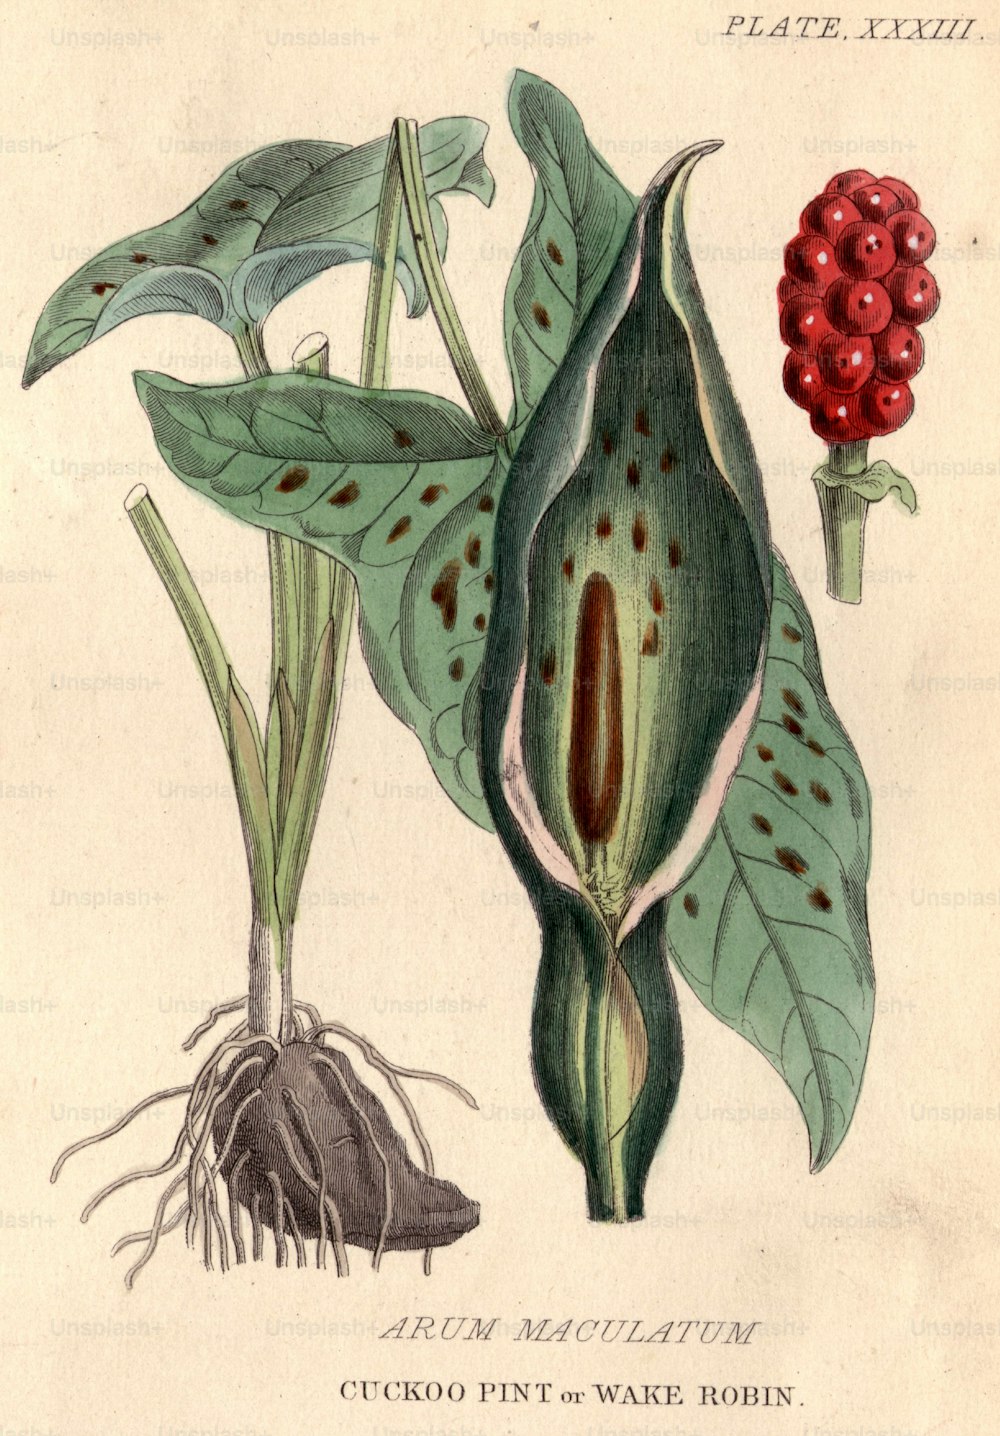 vers 1800 : Arum maculatum, pinte de coucou ou merle, avec ses baies rouges distinctives et très toxiques.  (Photo de Hulton Archive/Getty Images)